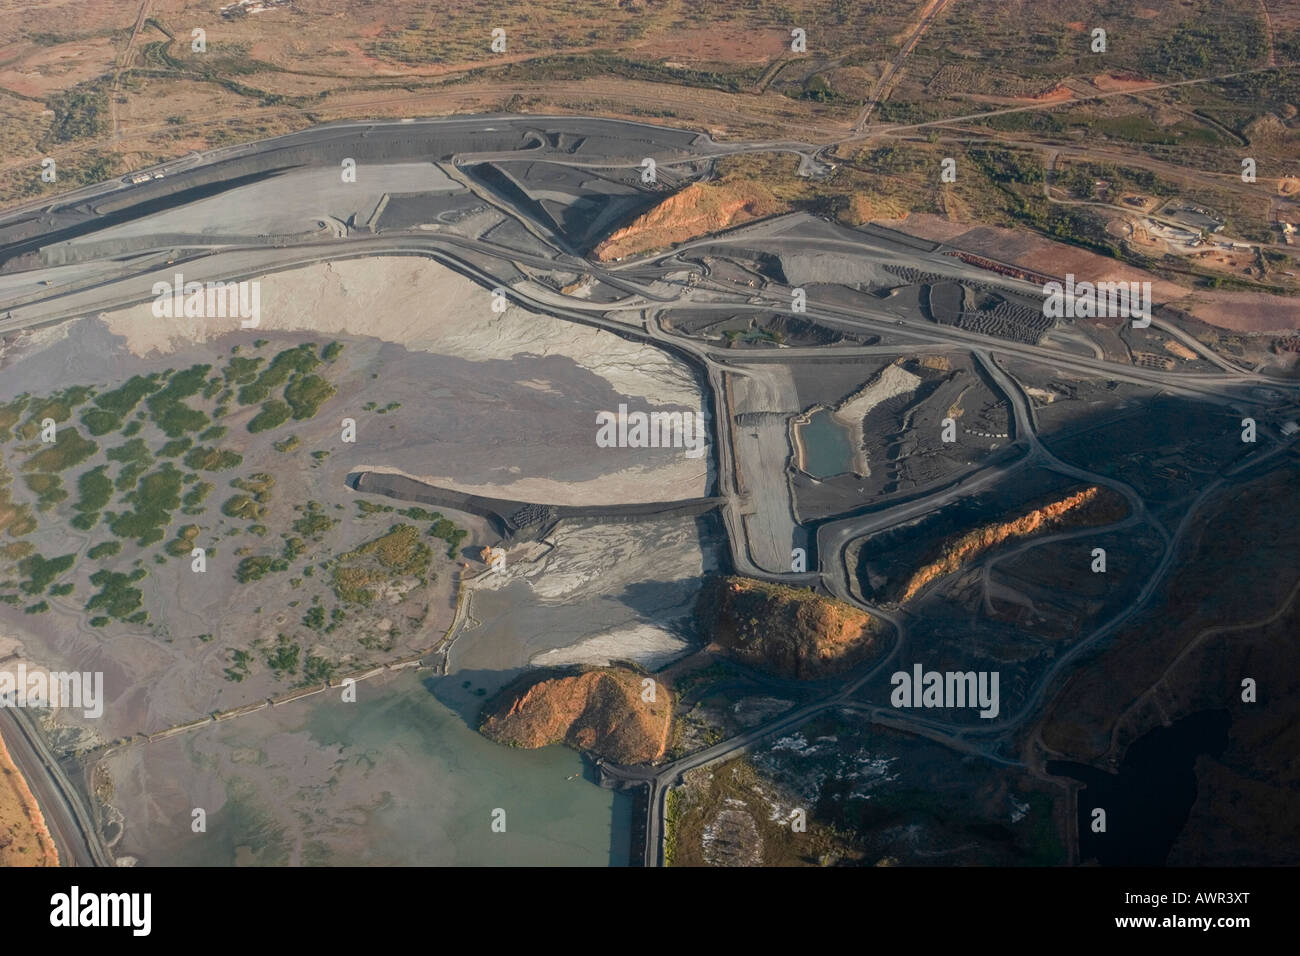 Argyle diamond mine, aerial view, Kimberley, West Australia, Australia Stock Photo